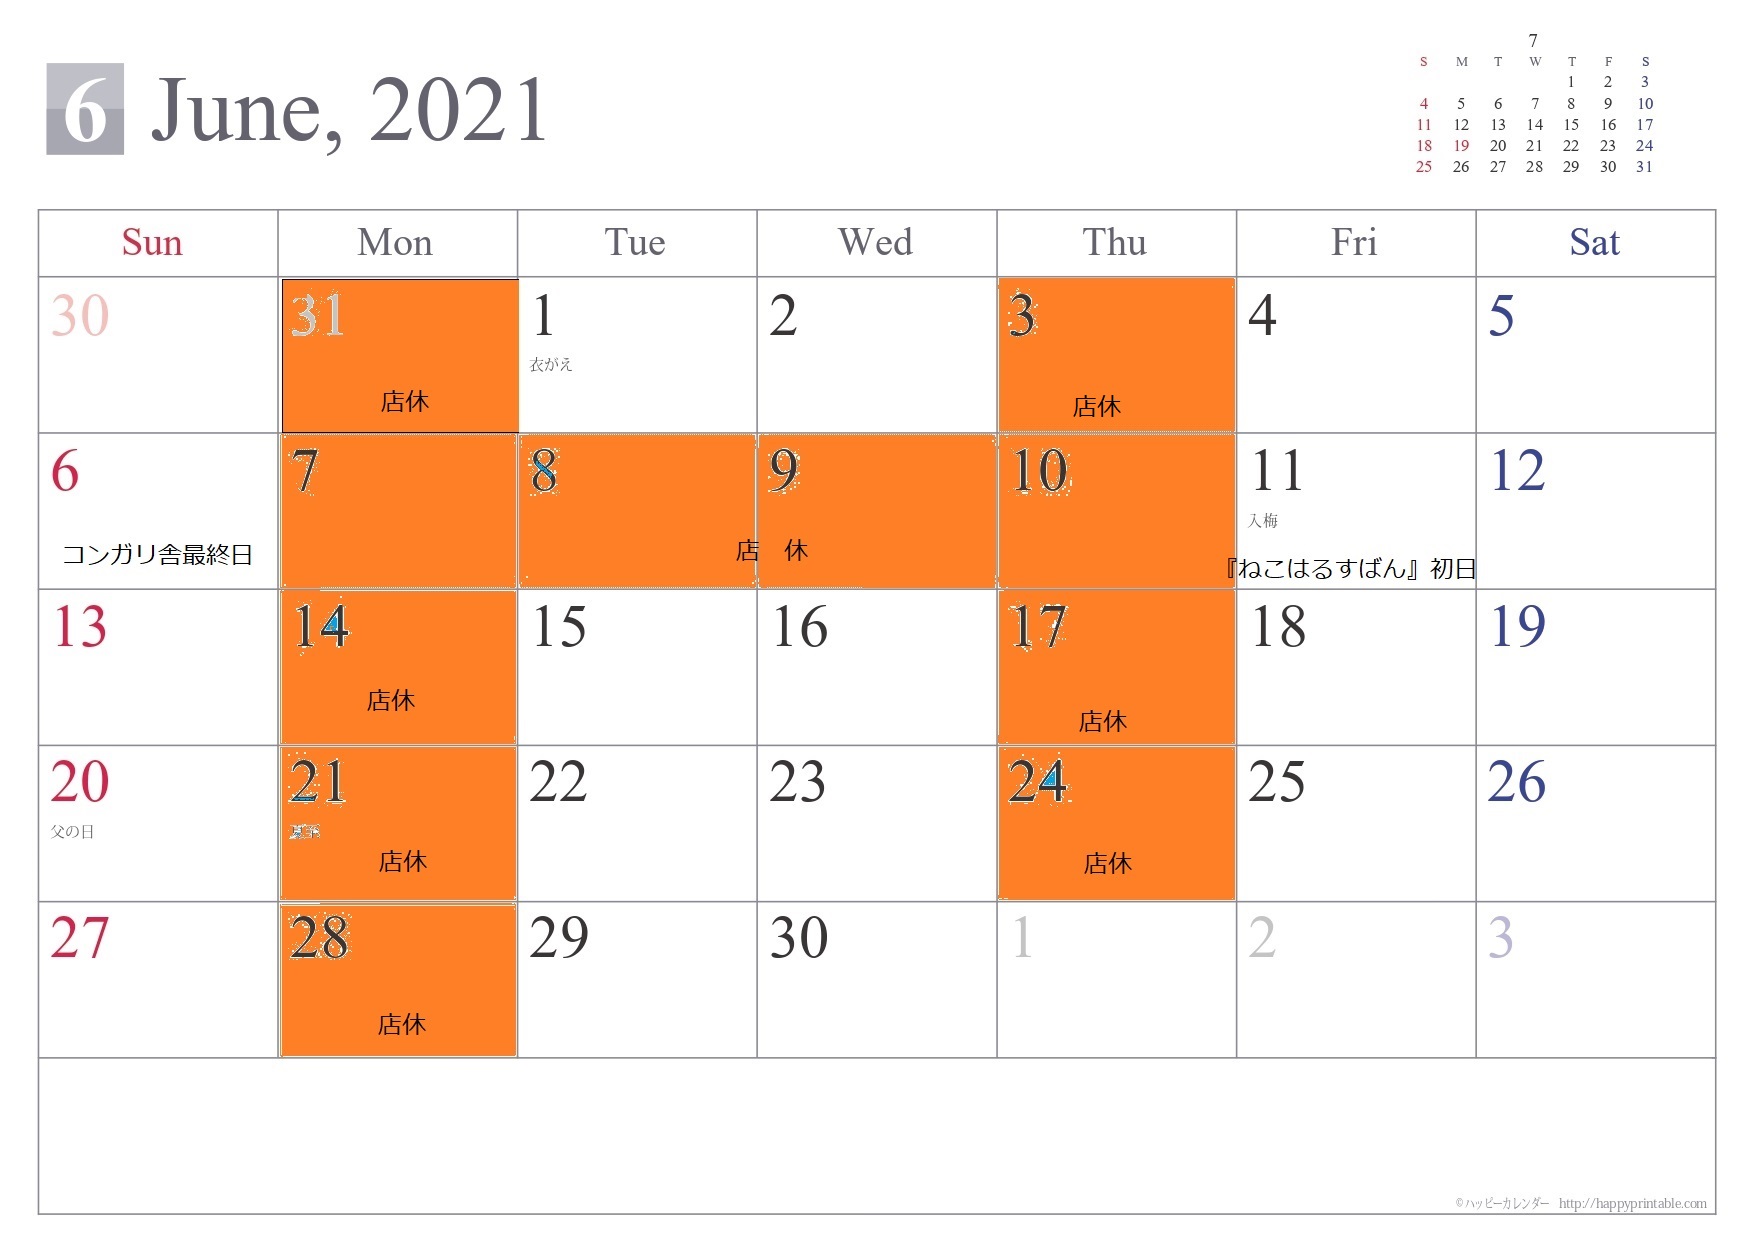 6月の店休カレンダーです